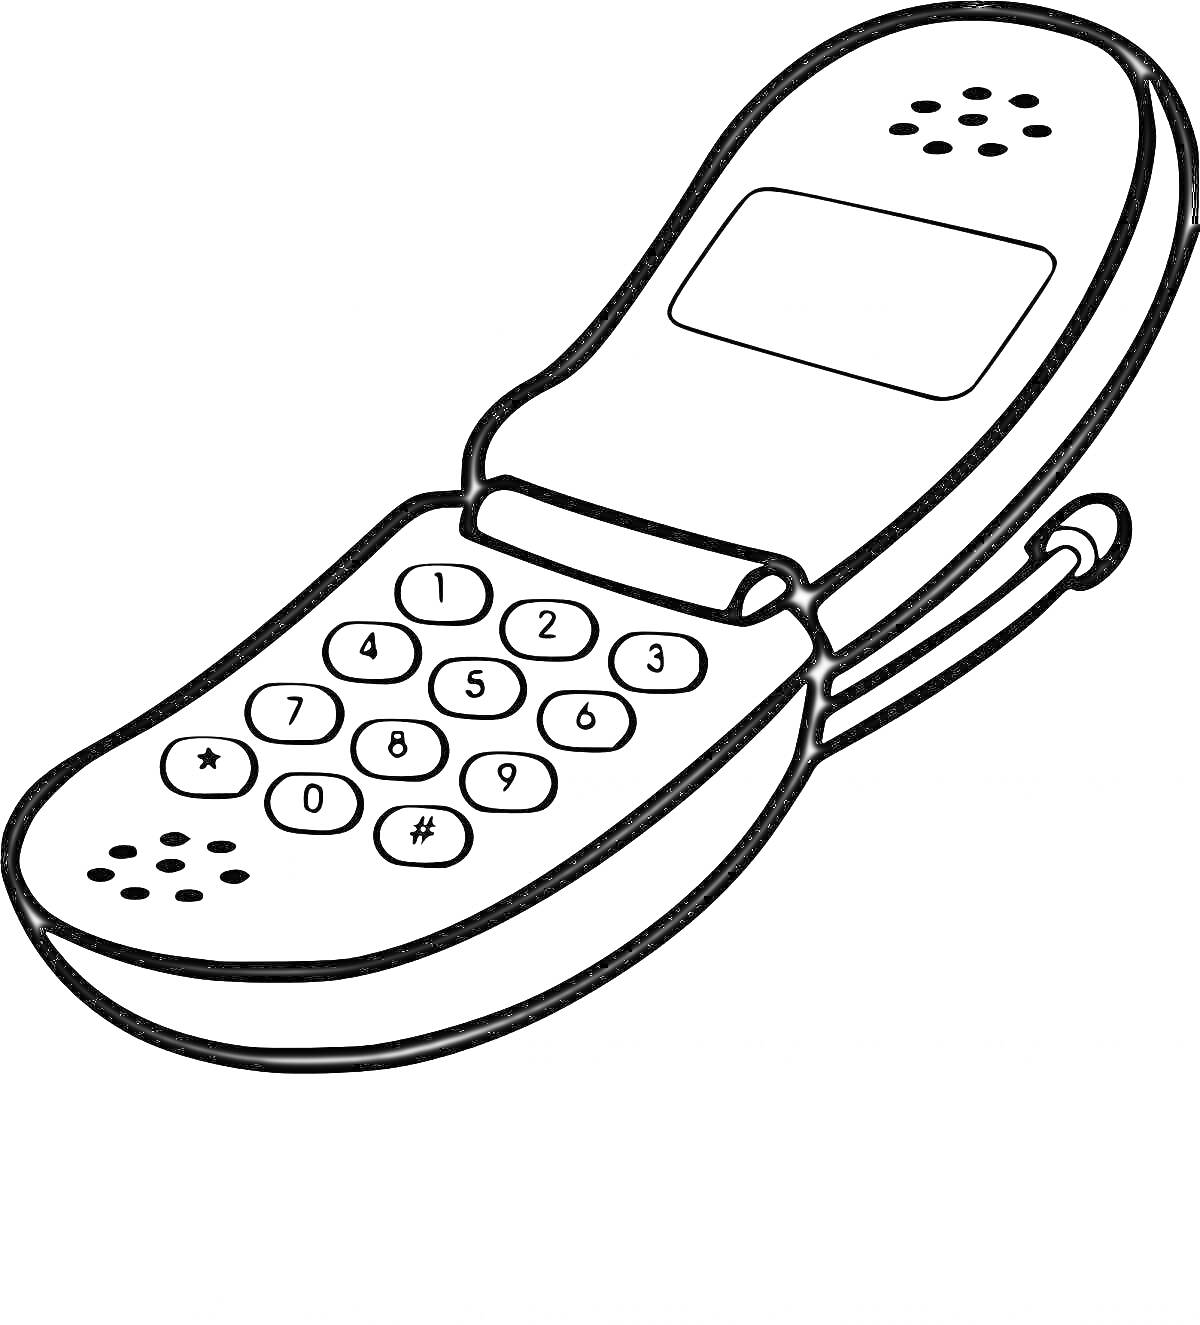 Раскладной телефон с кнопками, динамиками и экраном